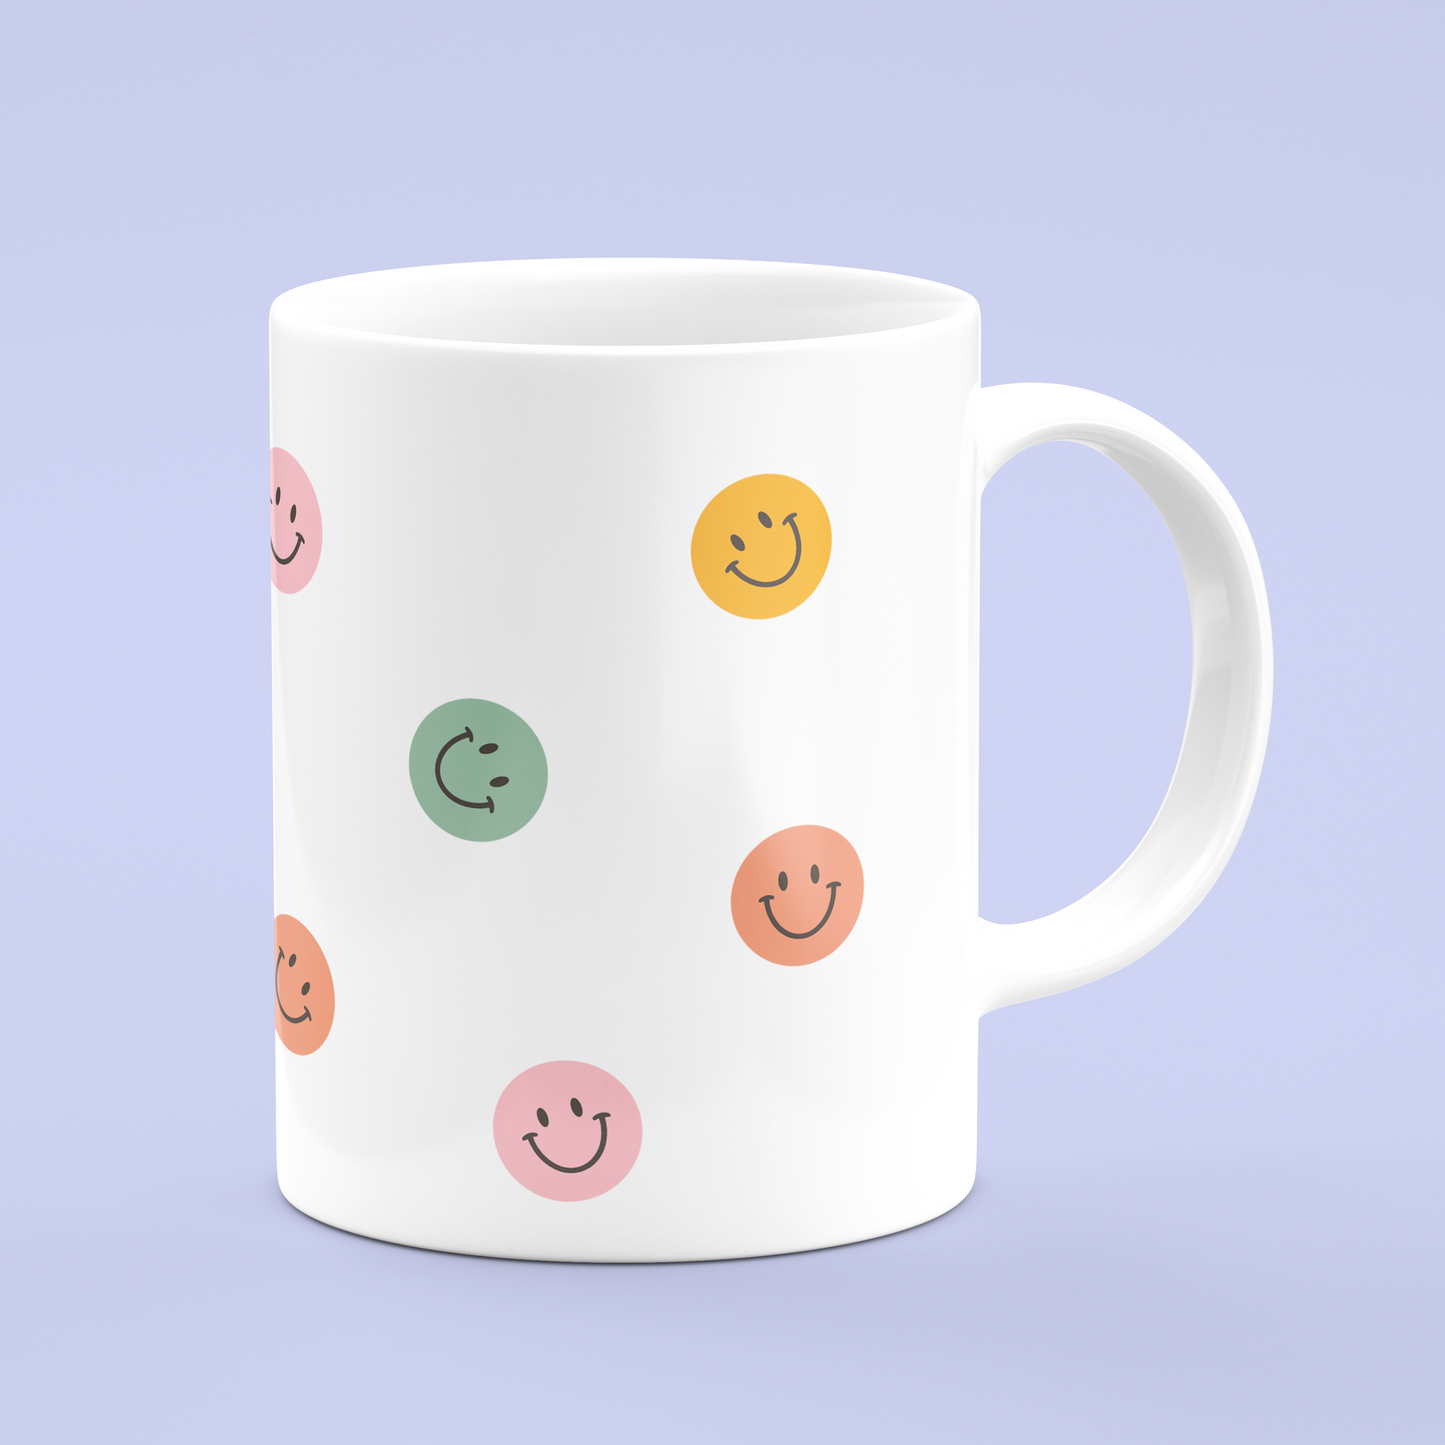 Do What Makes you Happy Mug